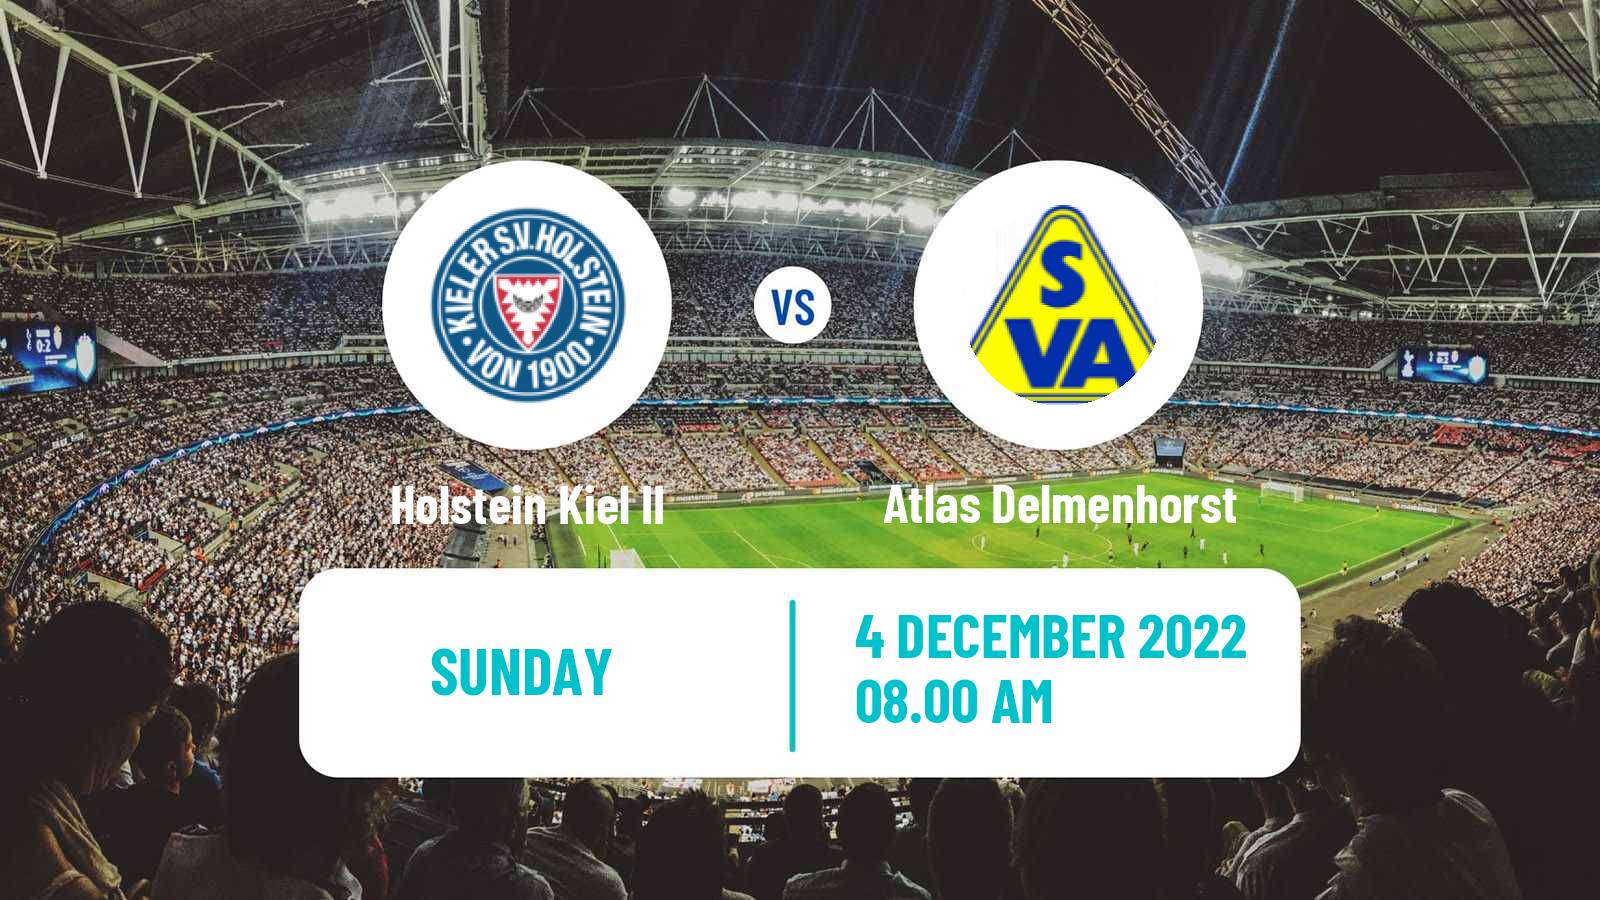 Soccer German Regionalliga North Holstein Kiel II - Atlas Delmenhorst